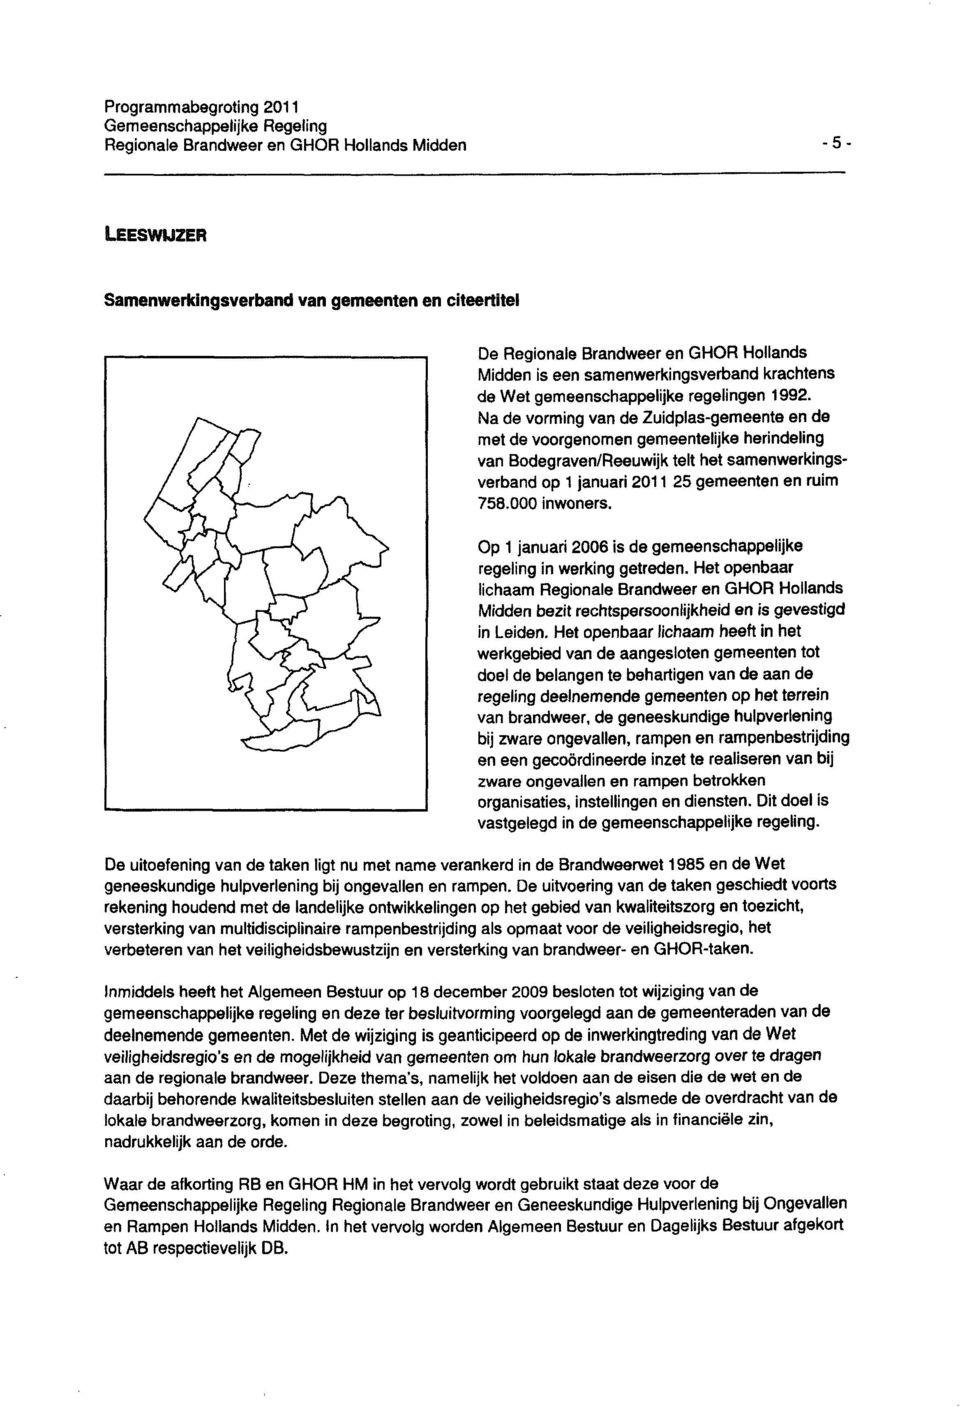 Na de vorming van de Zuidpias-gemeente en de met de voorgenomen gemeentelijke herindeling van Bodegraven/Reeuwijk telt het samenwerkingsverband op 1 januari 2011 25 gemeenten en ruim 758.000 inwoners.